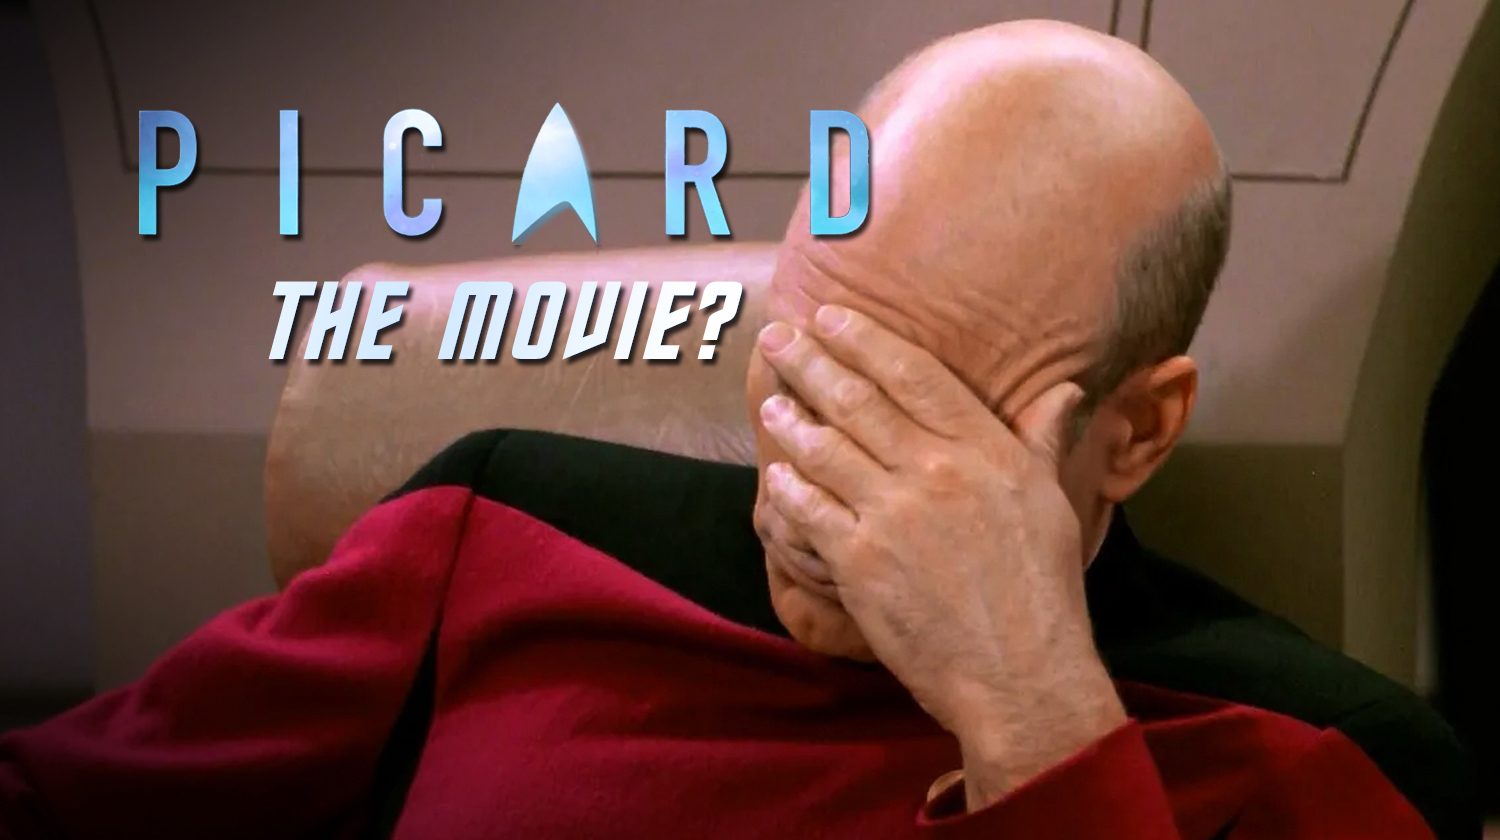 Patrick Stewart Reveals New Star Trek Movie Script Featuring Jean